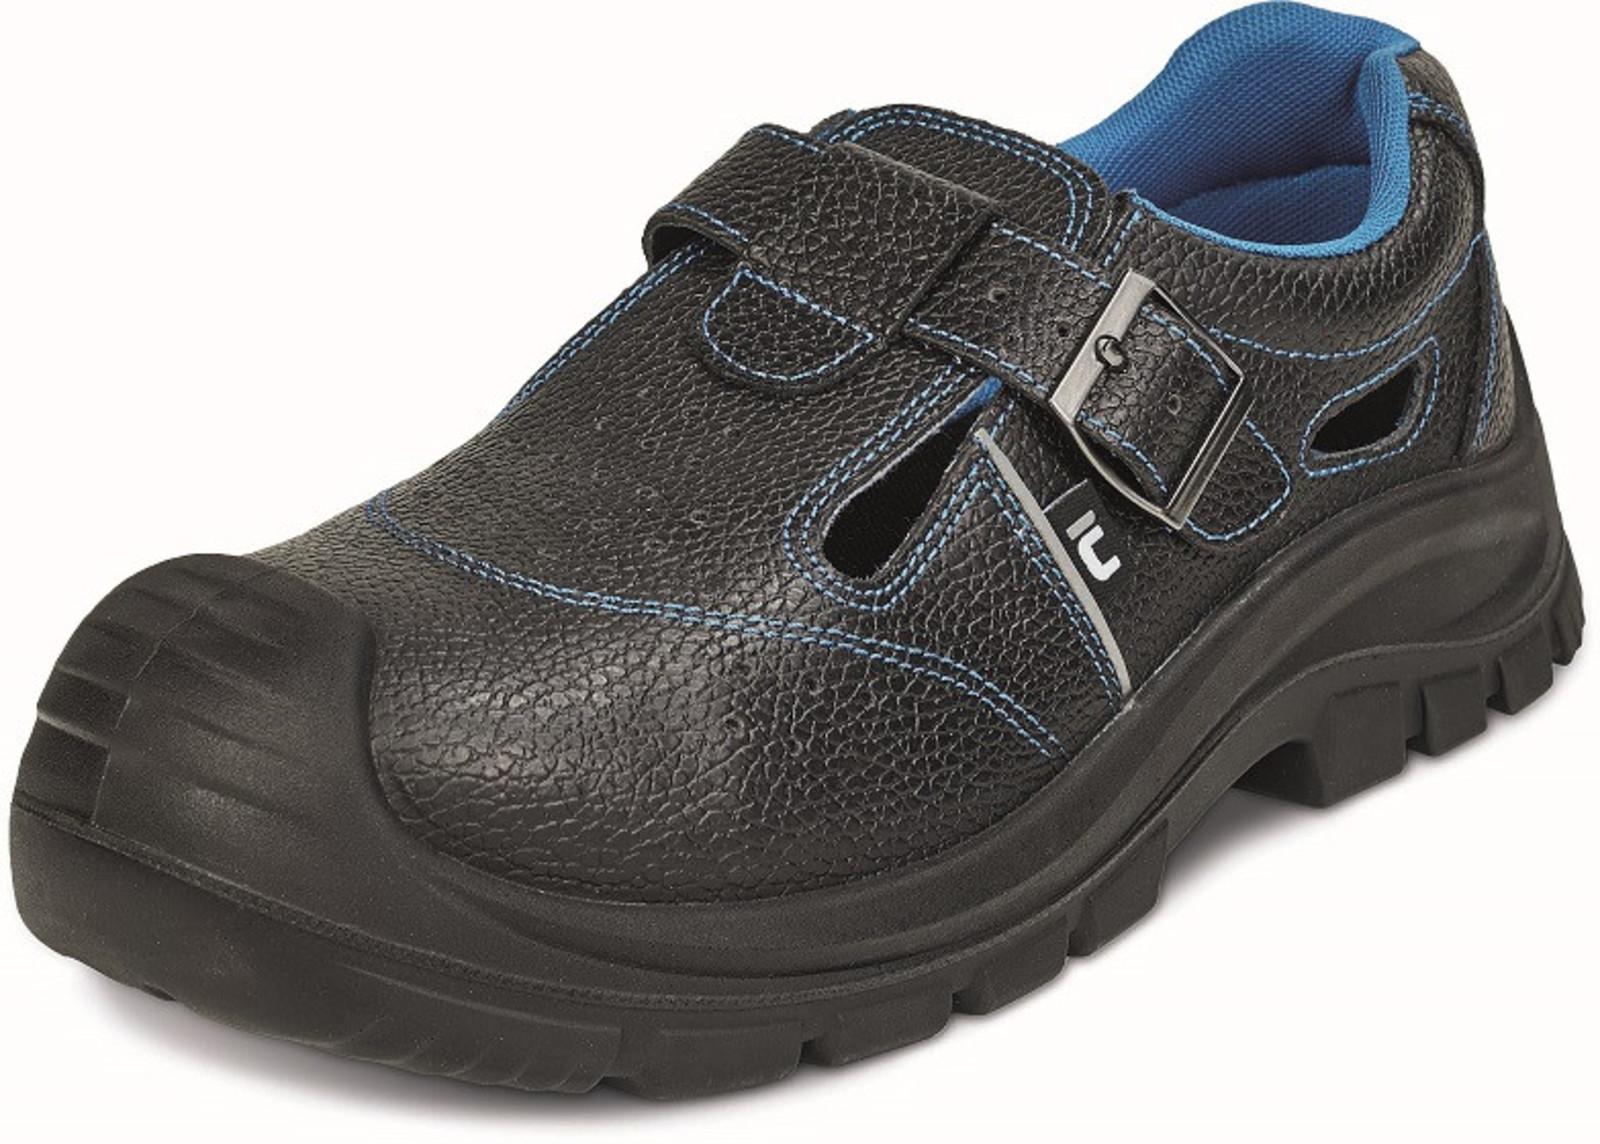 Bezpečnostné sandále Raven XT S1 SRC - veľkosť: 37, farba: čierna